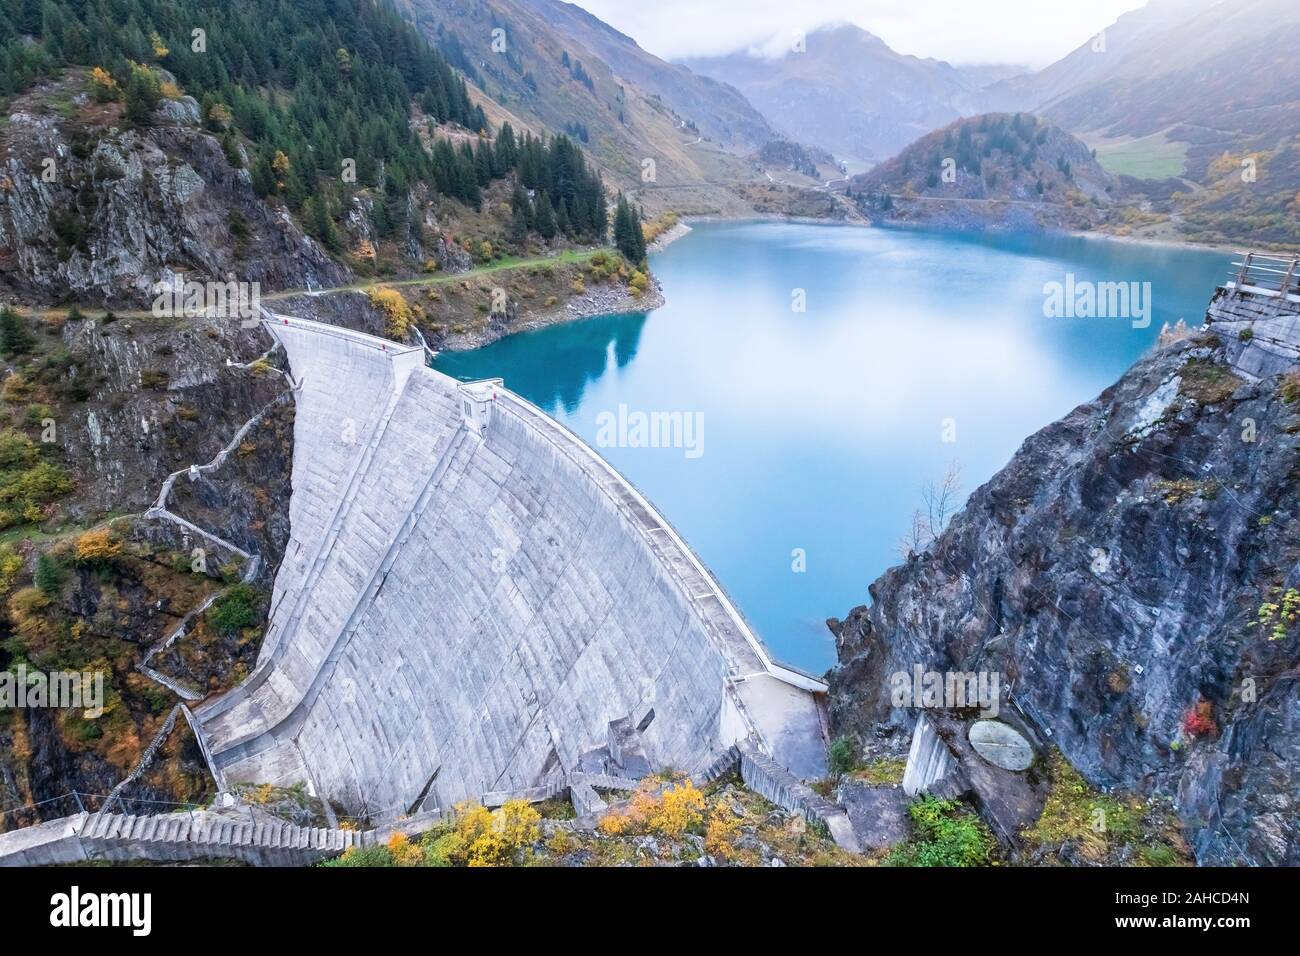 Serbatoio del lago e l'acqua della diga nelle Alpi francesi per produrre energia idroelettrica, sviluppo sostenibile utilizzando fonti di energia rinnovabili e di energia idroelettrica Foto Stock